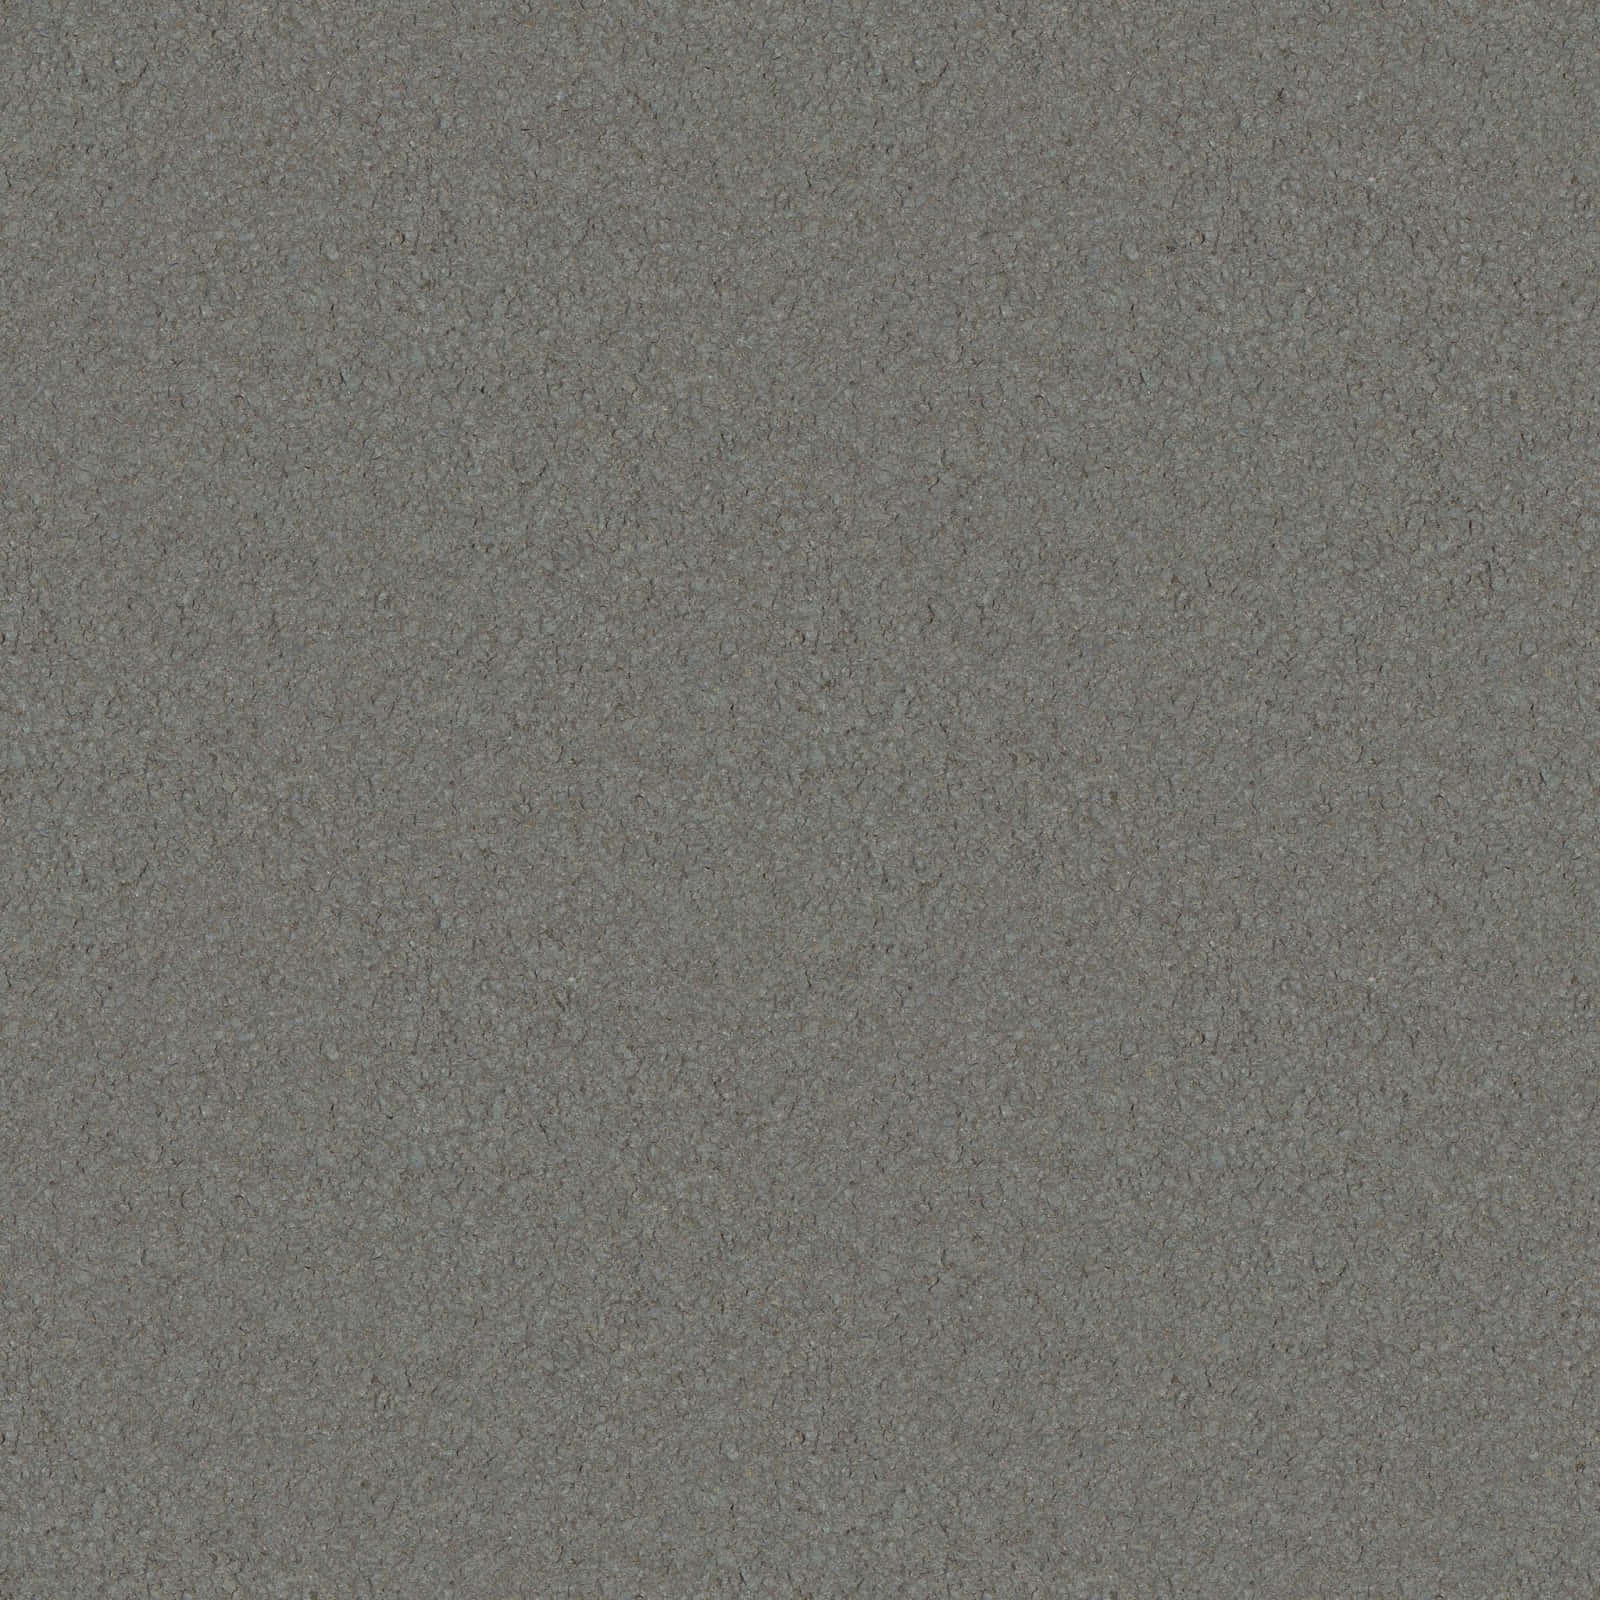 Slätgrå Granit Med Strukturerad Yta.